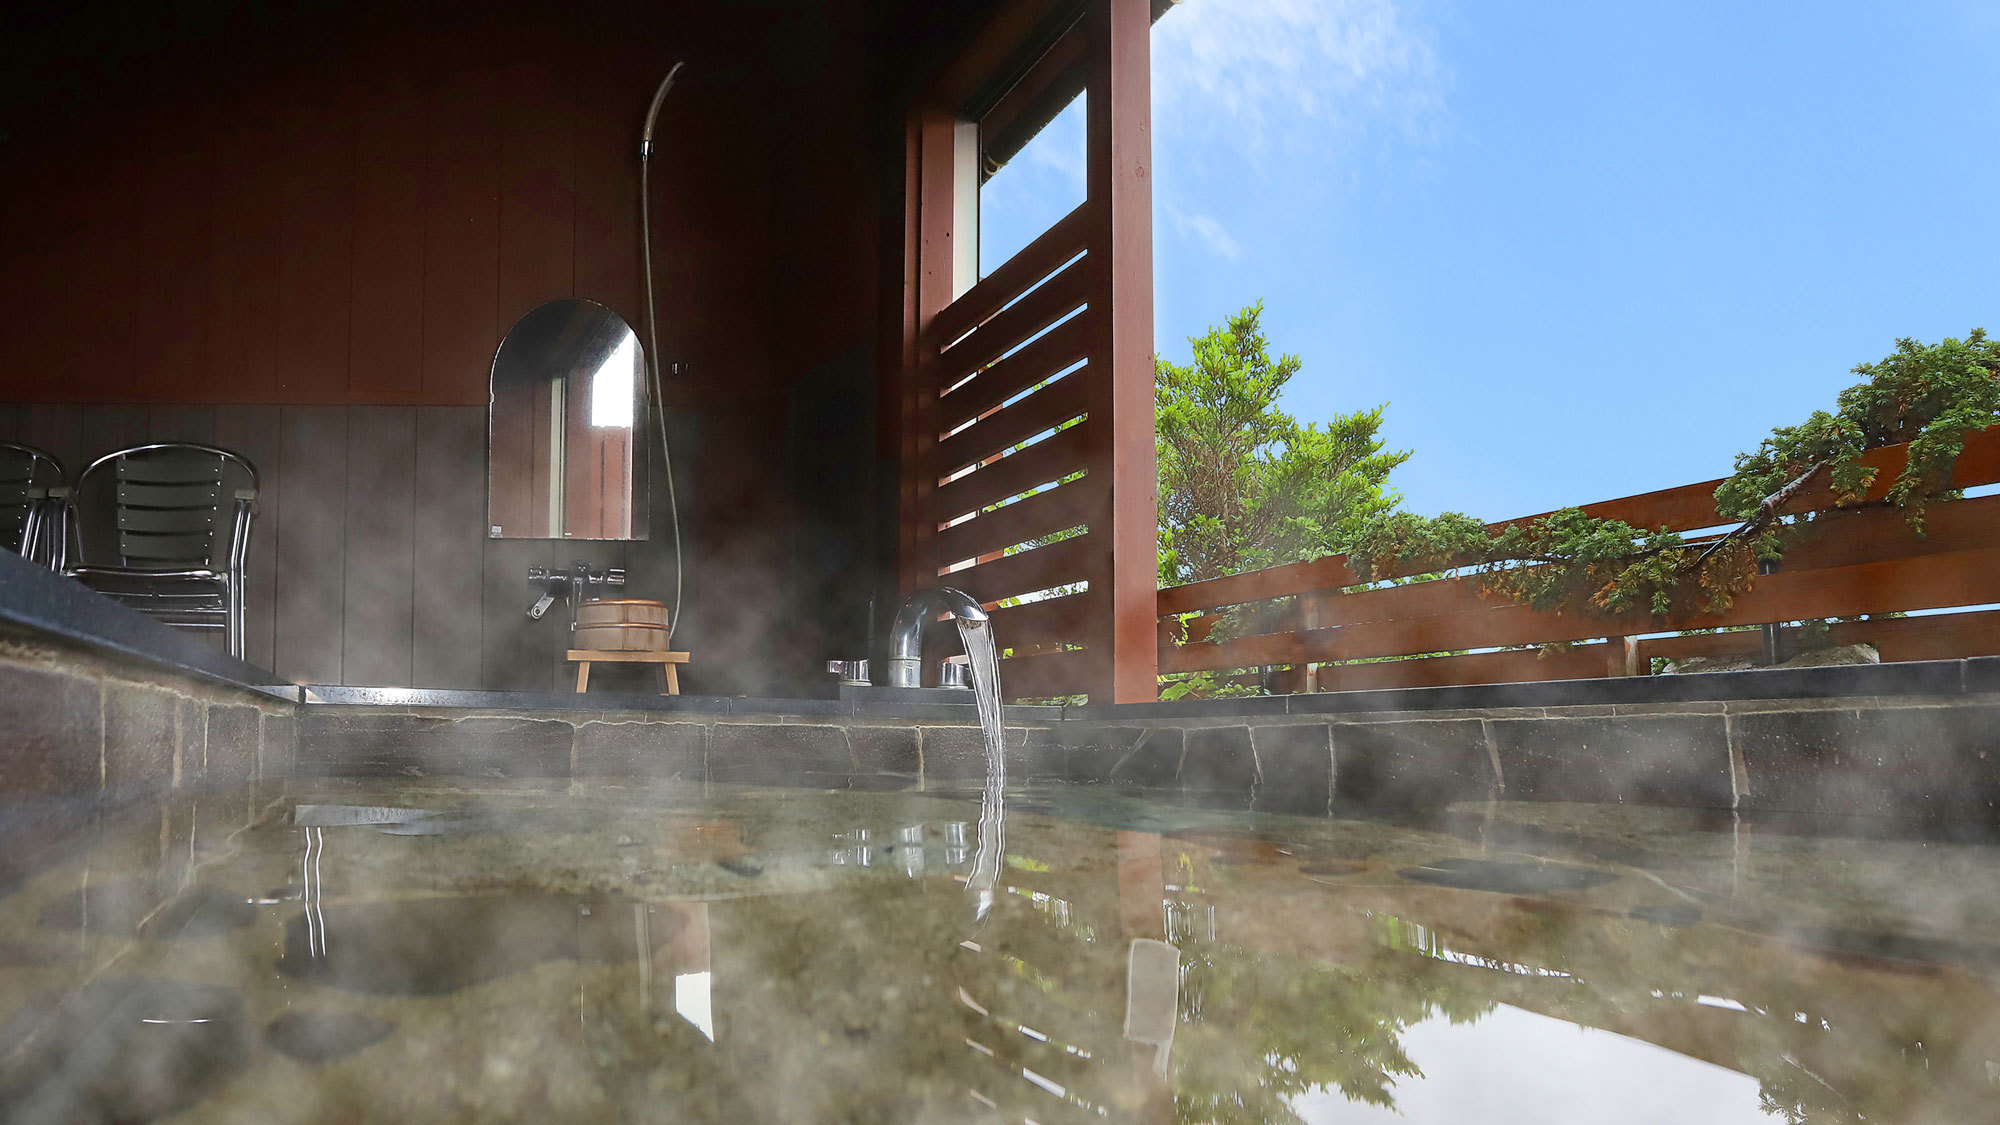 お部屋の温泉露天風呂。美人の湯と名高い「榊原温泉の湯」をお部屋で。石風呂タイプ。